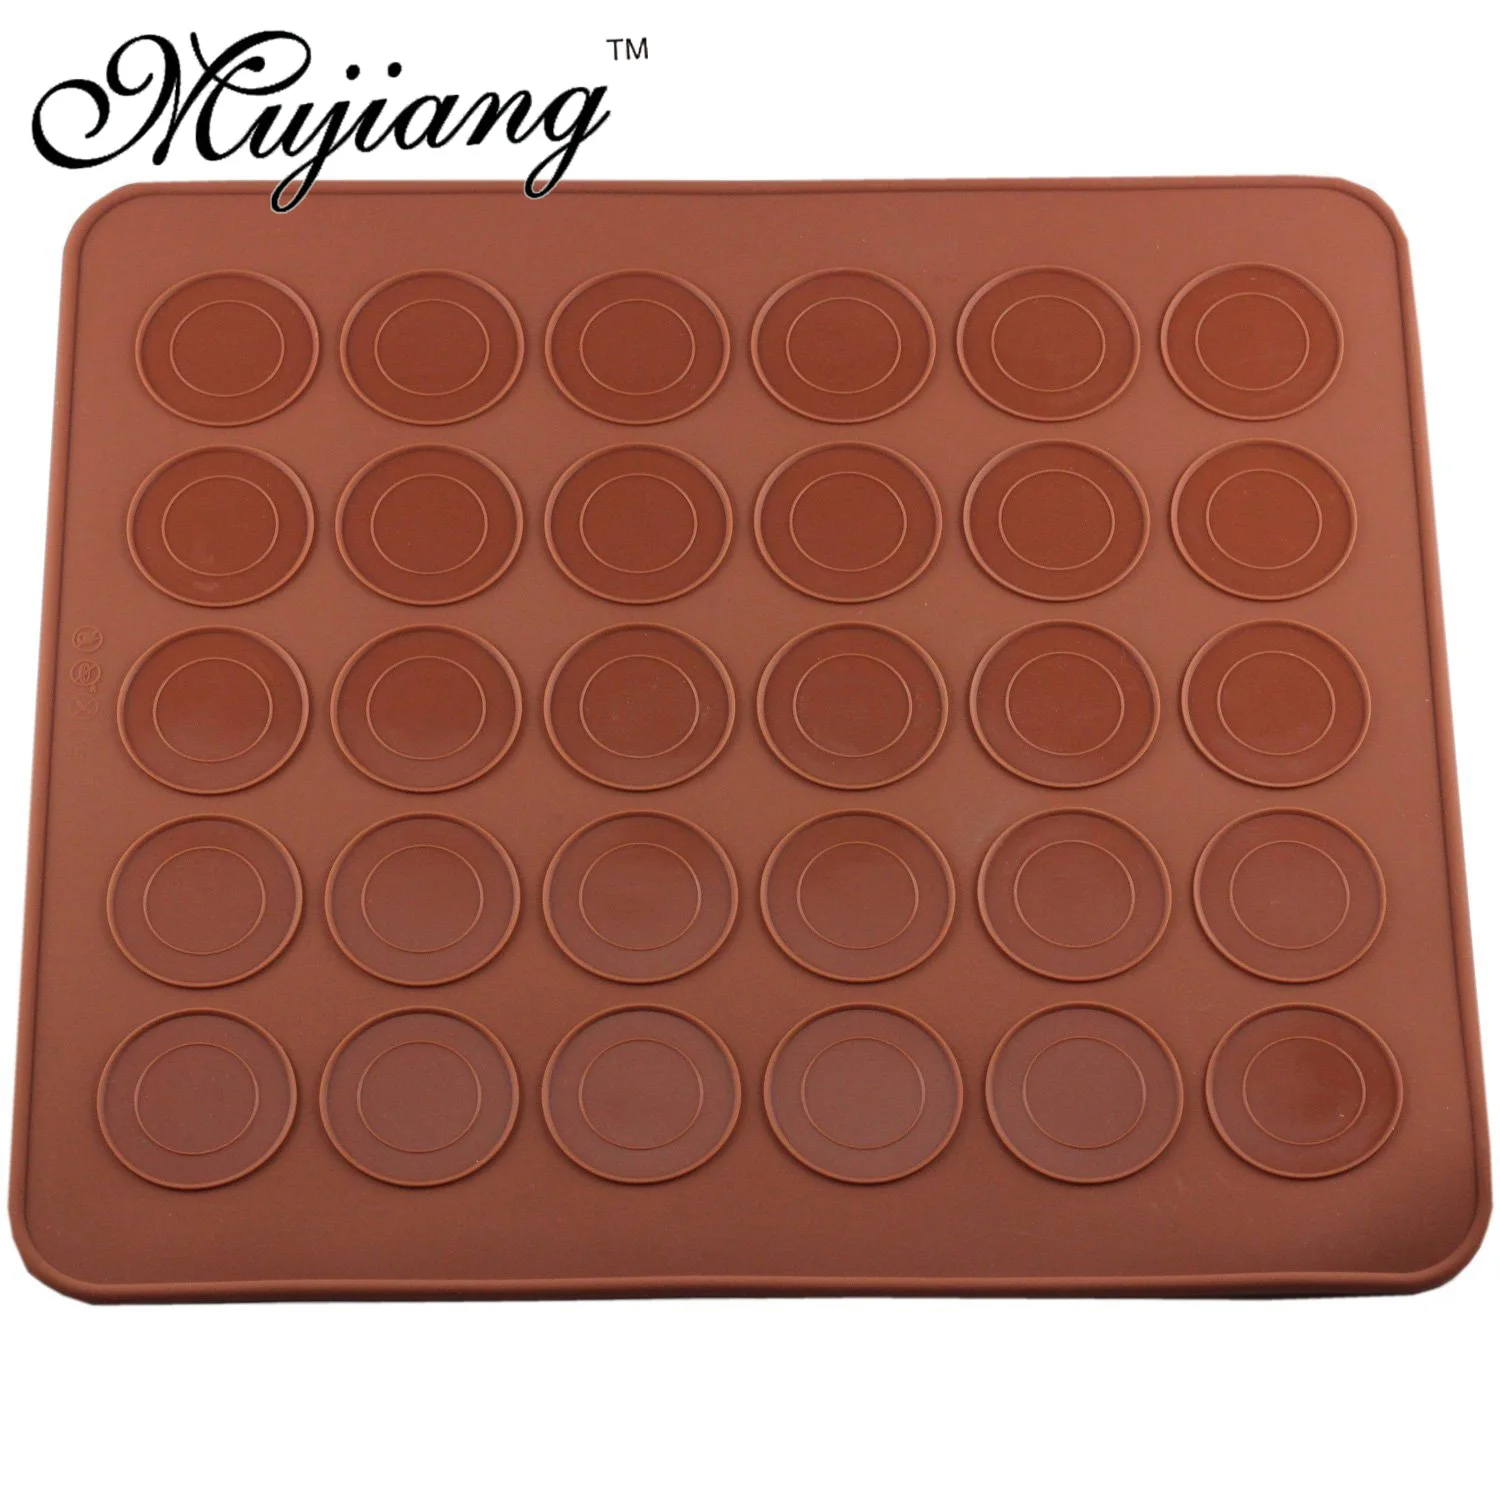 Mujiang Silicone Macaron Kit Decorating Piping Pot Pastry Baking Mat Capacity 30 